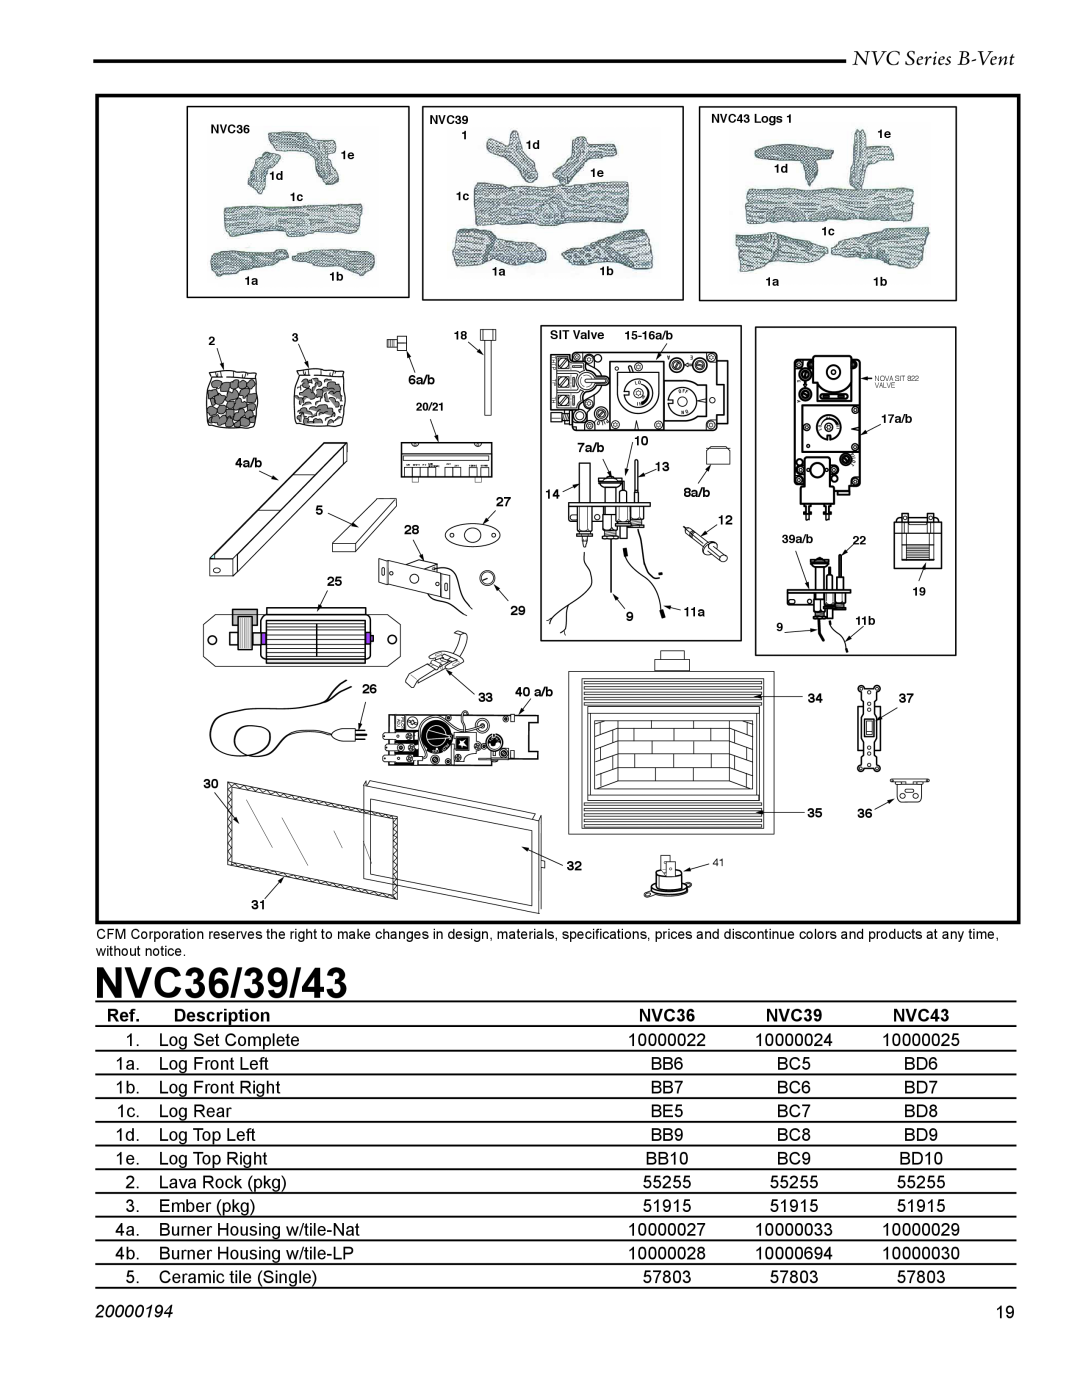 Vermont Casting NVC43, NVC39 warranty NVC36/39/43, NVC Series B-Vent, Description, 20000194 